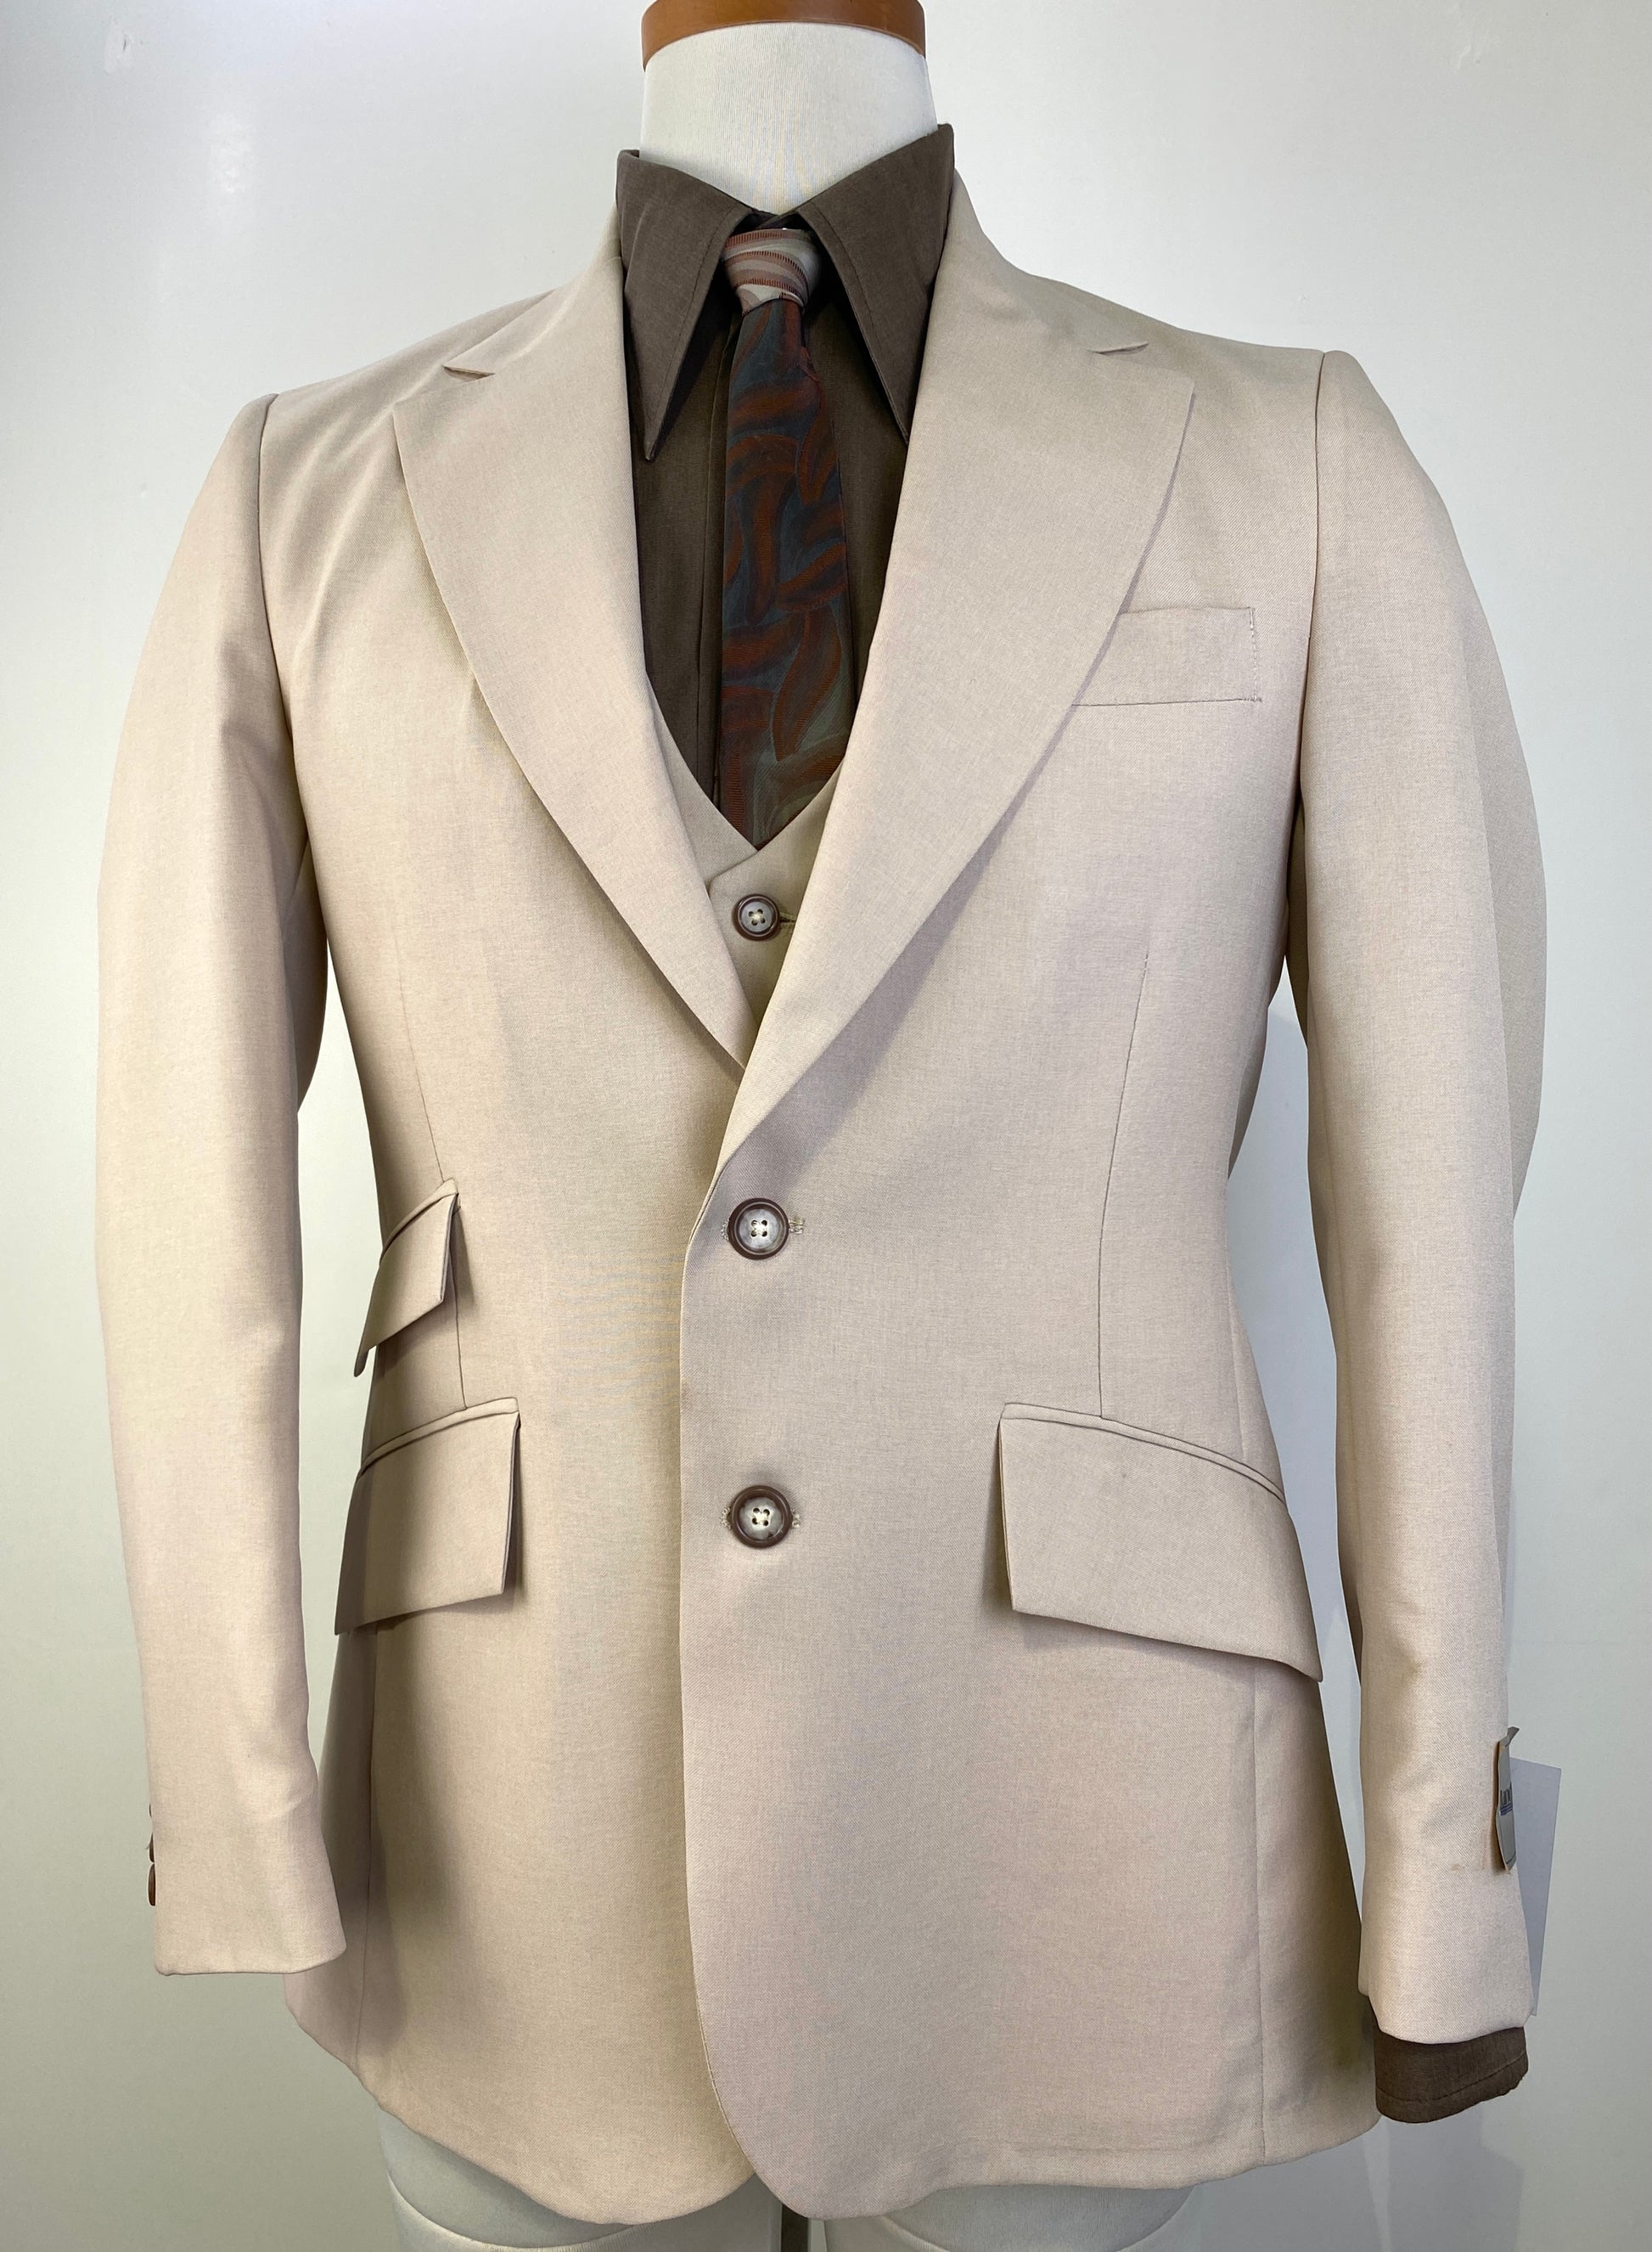 1980s Vintage Men's Poly Suit, Deadstock Beige 3-Piece Suit, NOS, C38